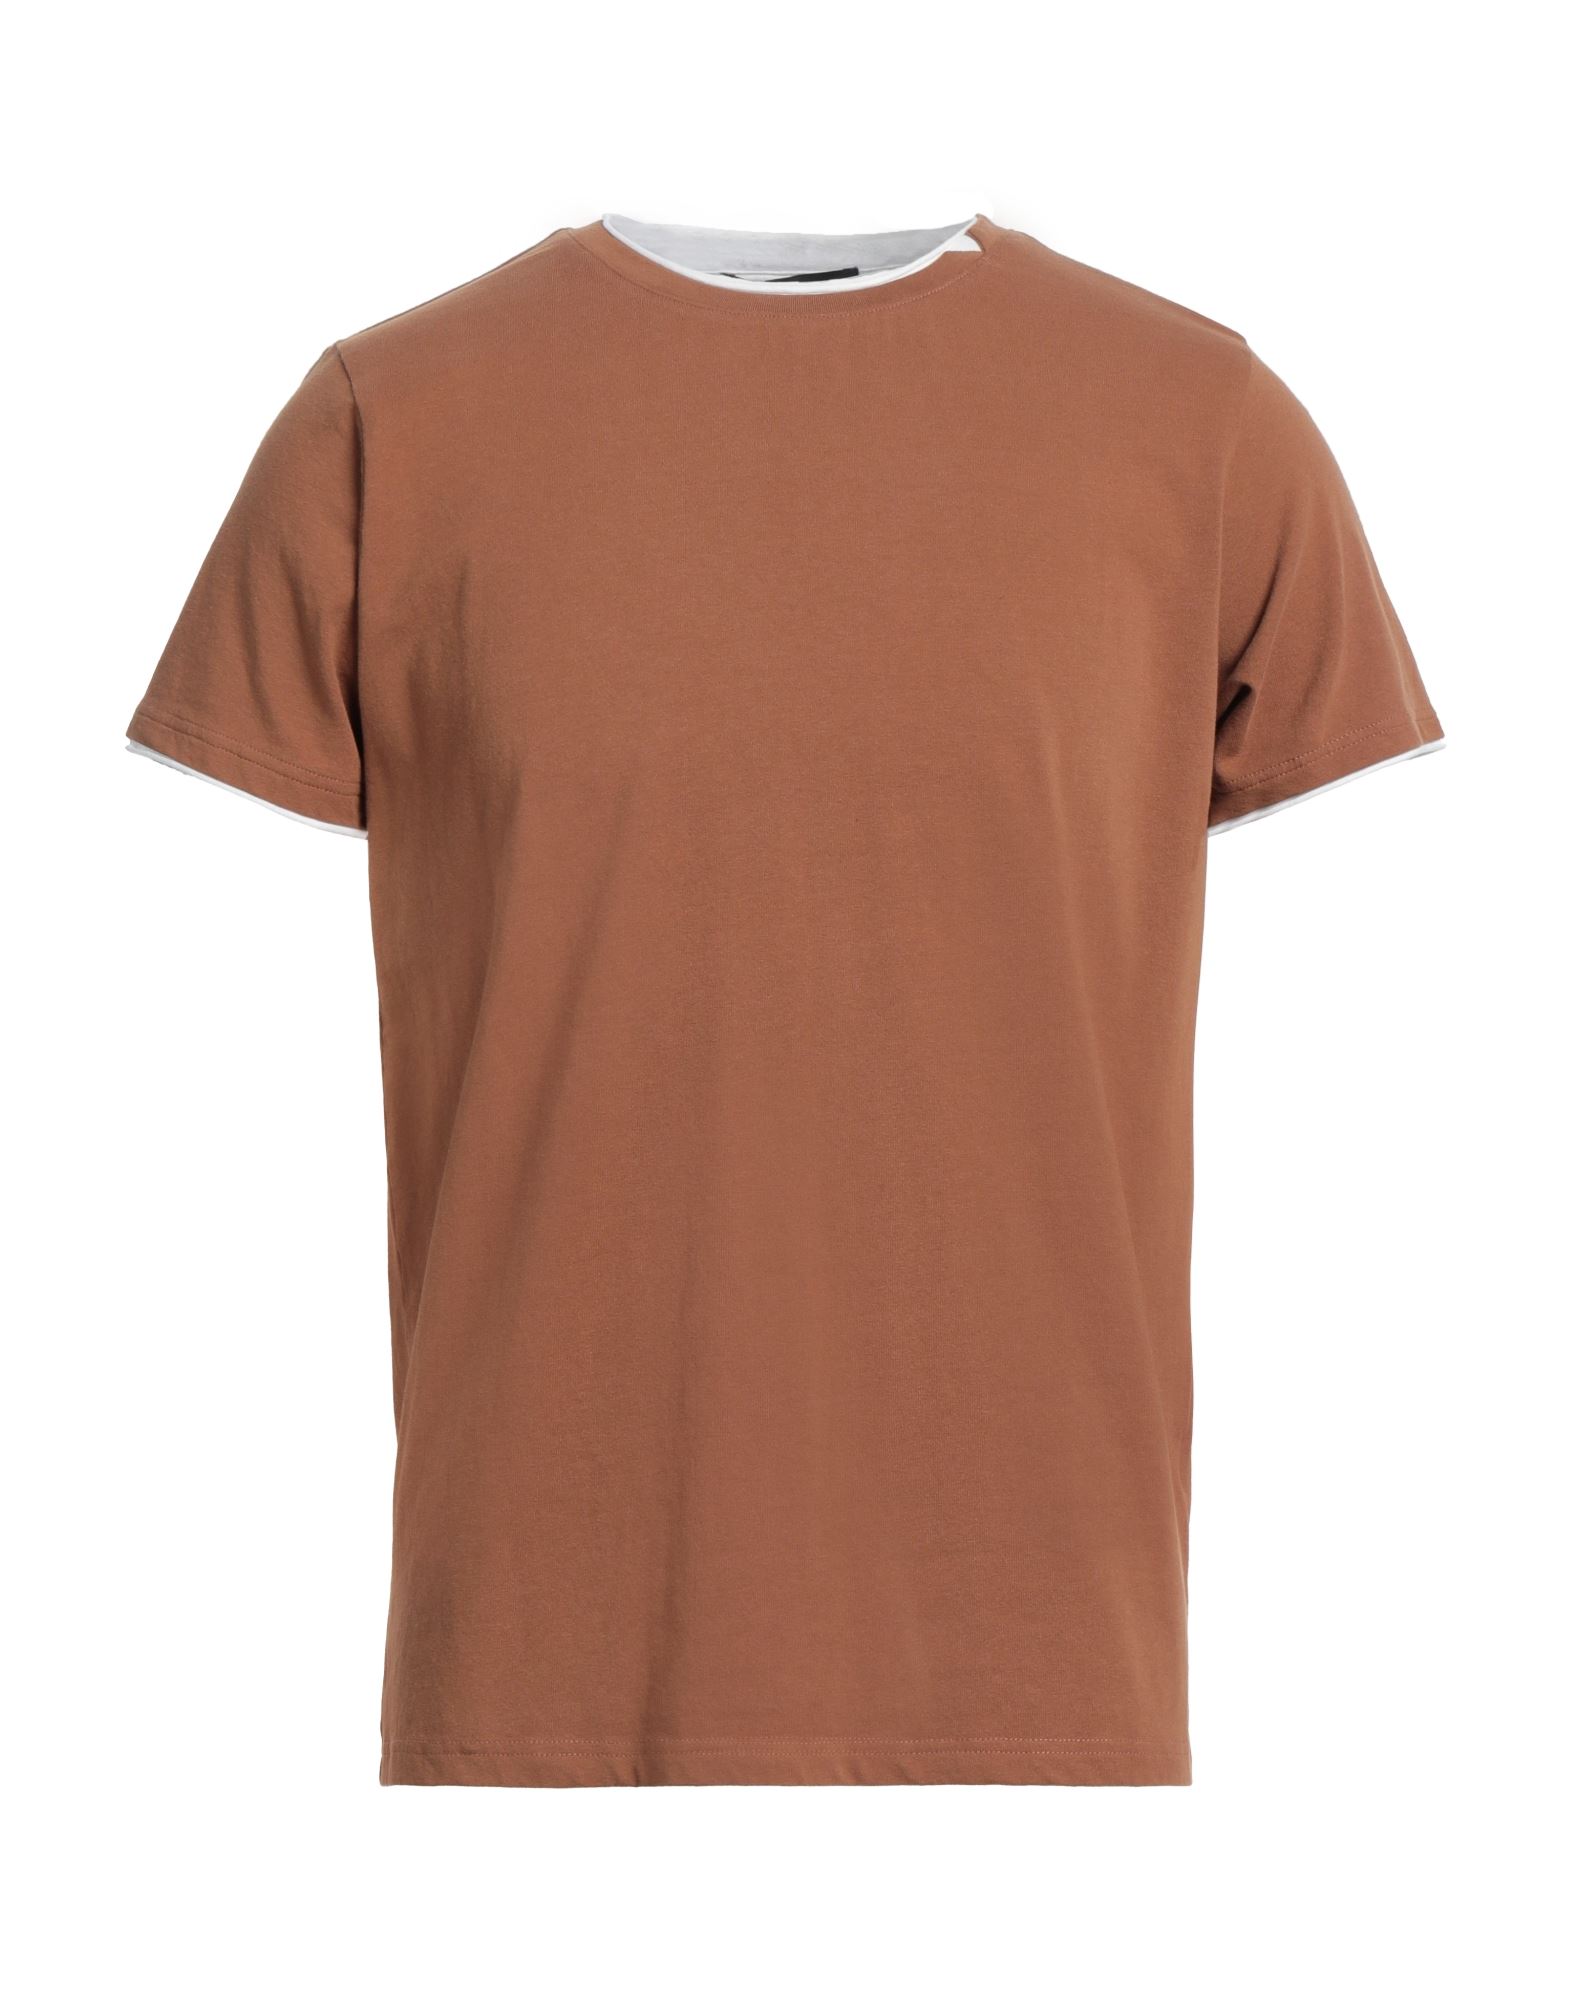 Jeordie's Man T-shirt Brown Size Xl Cotton, Elastane In Beige